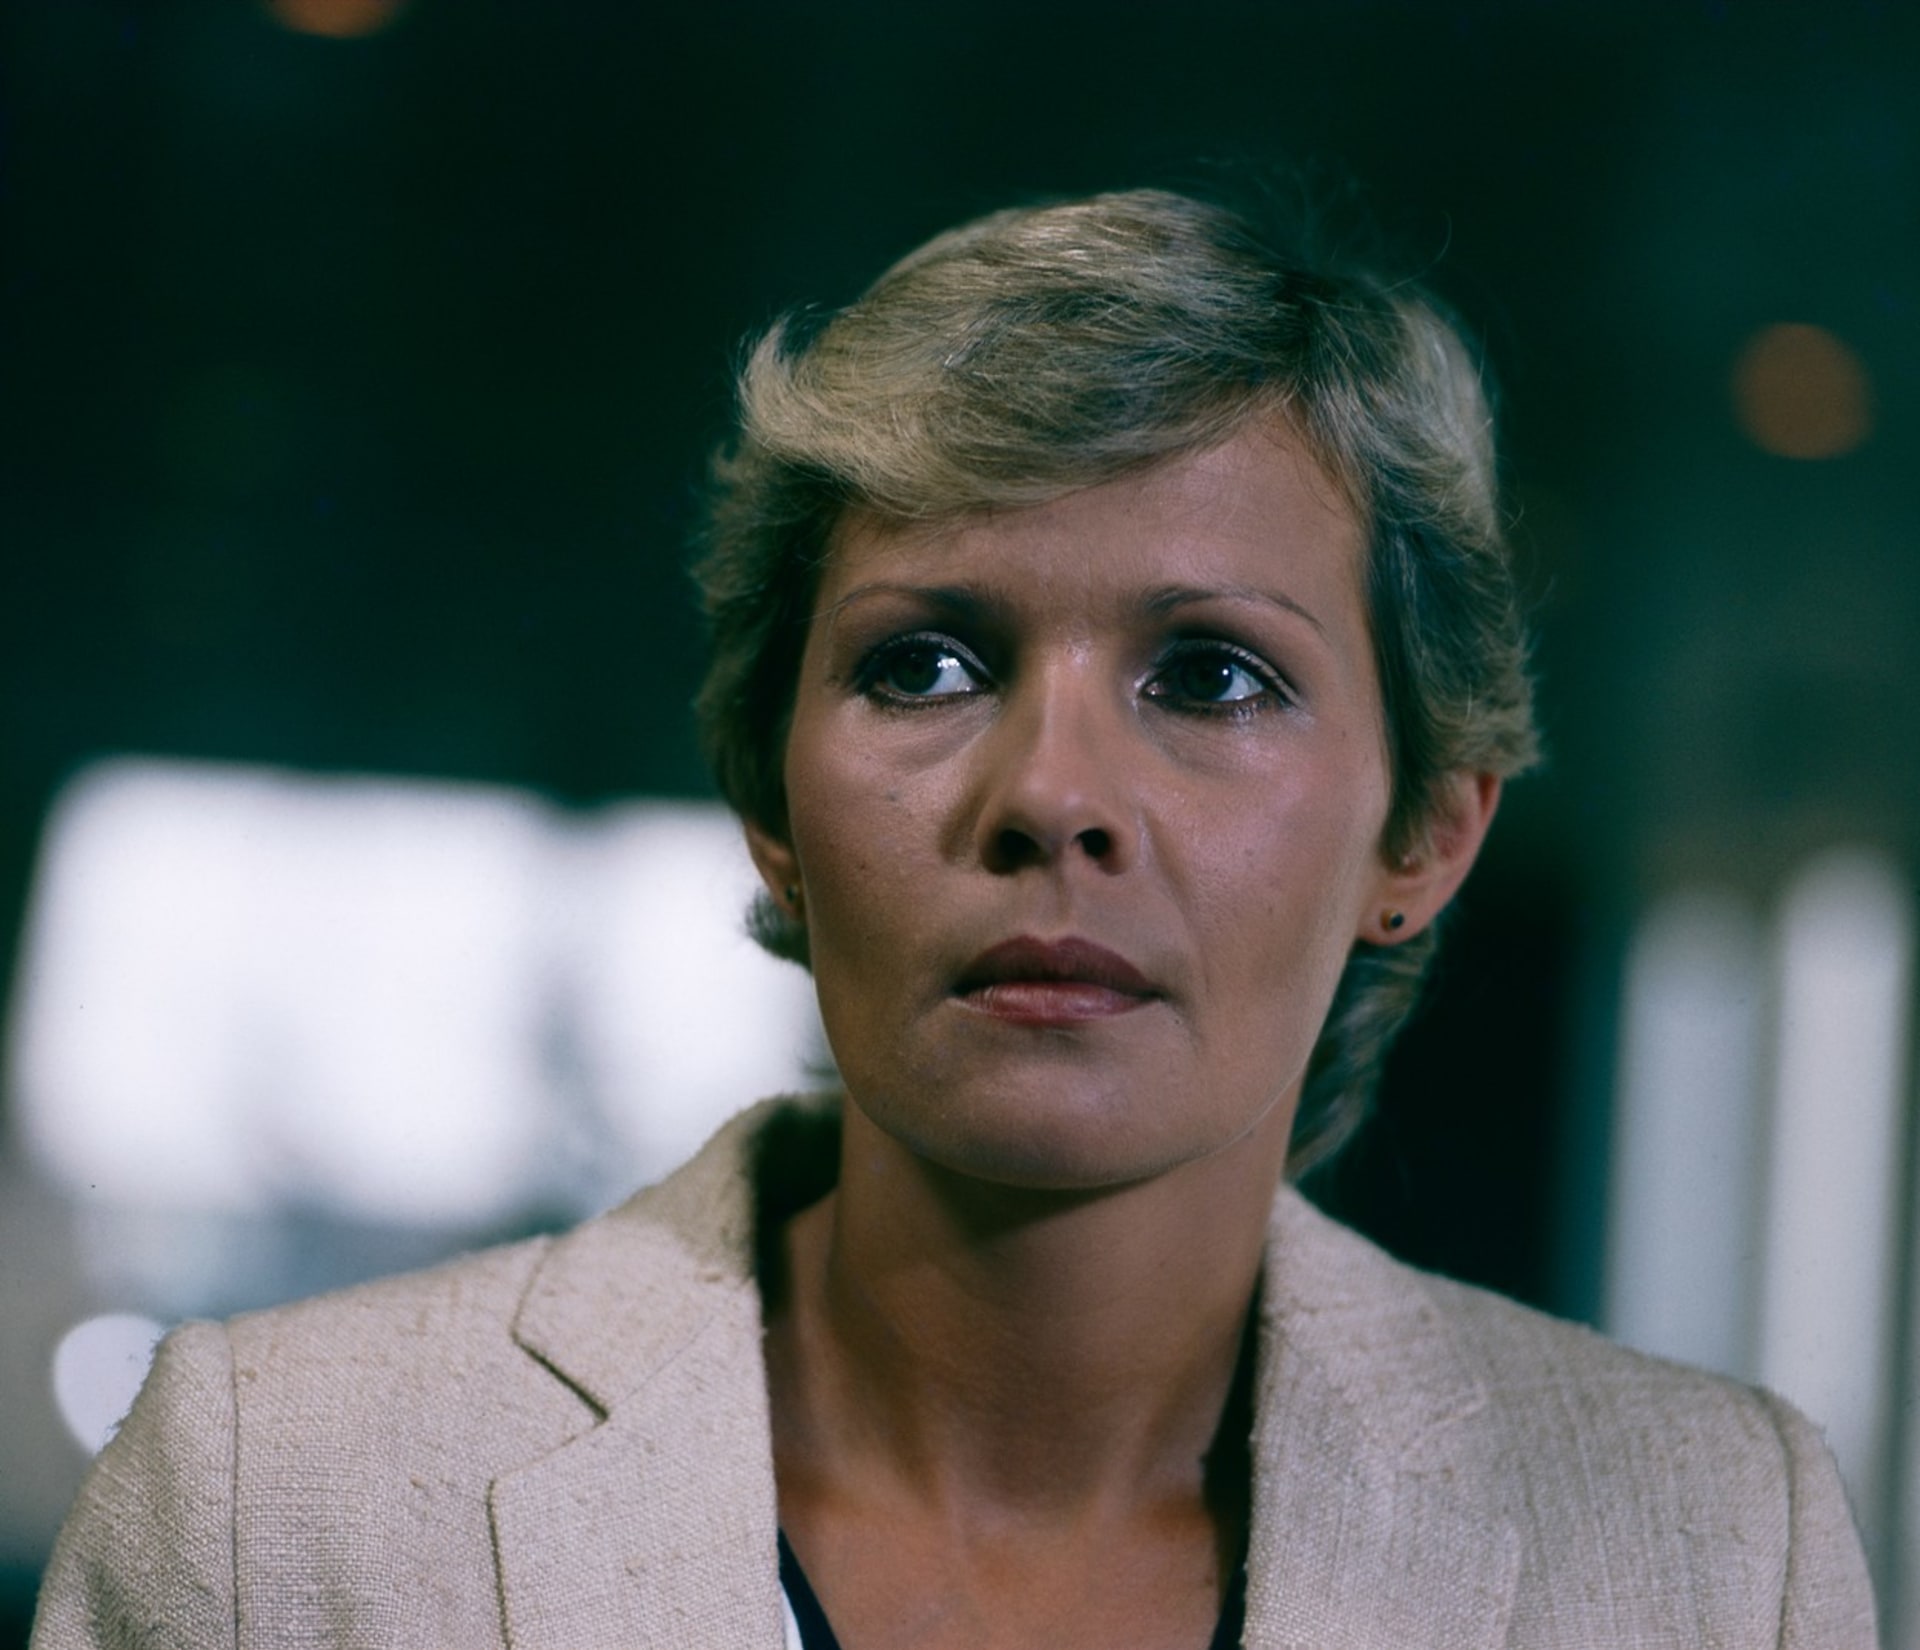 Herečka Jana Šulcová pod režisérkou Marií Poledňákovou zazářila ve filmu Kotva u přívozu a později i v komedii S tebou mě baví svět.